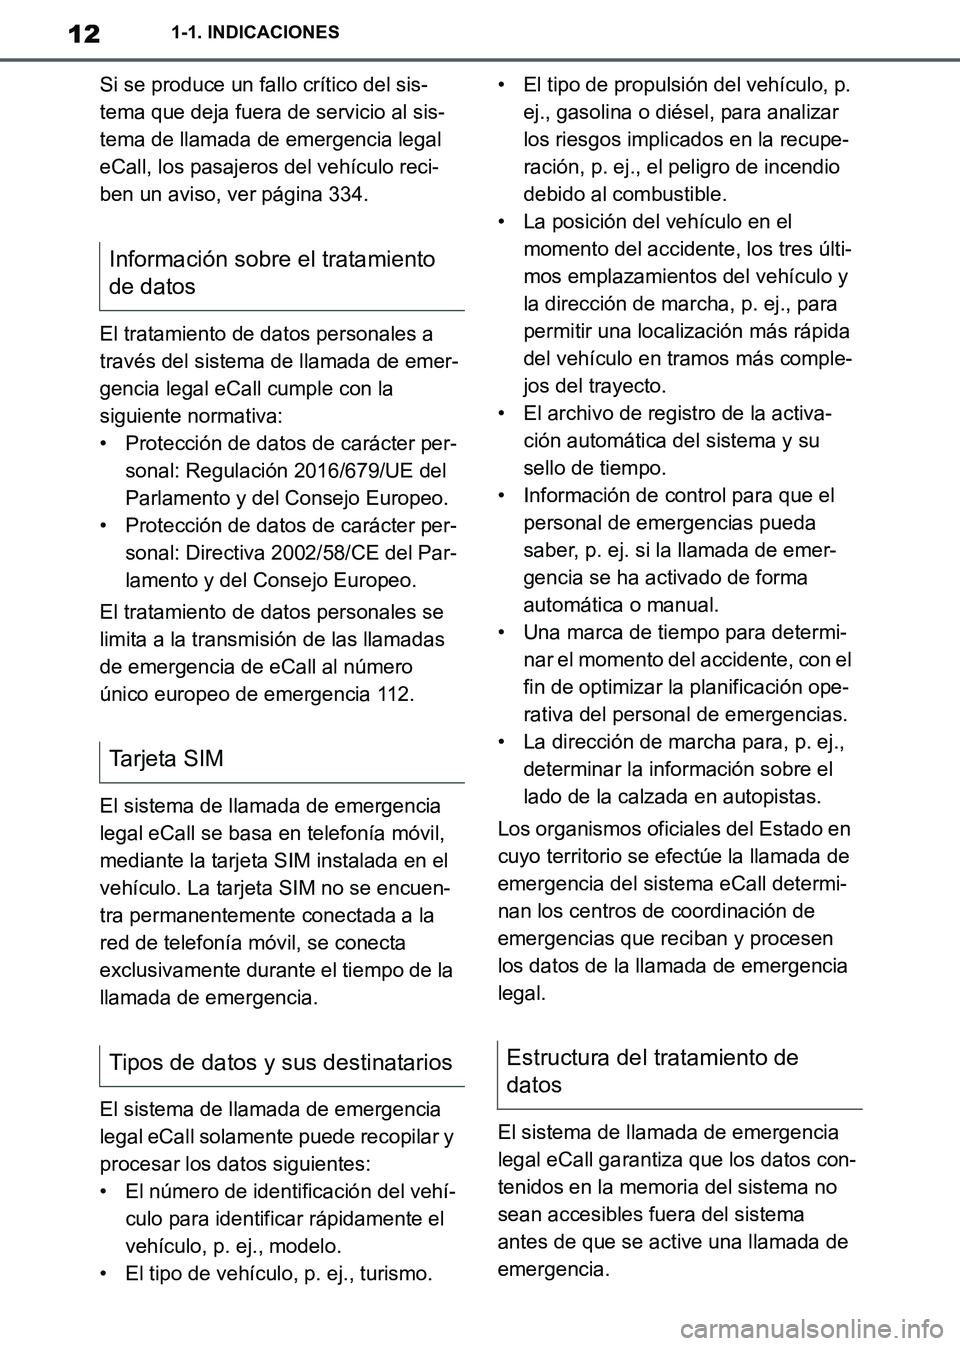 TOYOTA SUPRA 2019  Manuale de Empleo (in Spanish) 12
Supra Owners Manual_ES
1-1. INDICACIONES
Si se produce un fallo crítico del sis-
tema que deja fuera de servicio al sis-
tema de llamada de emergencia legal 
eCall, los pasajeros del vehículo re